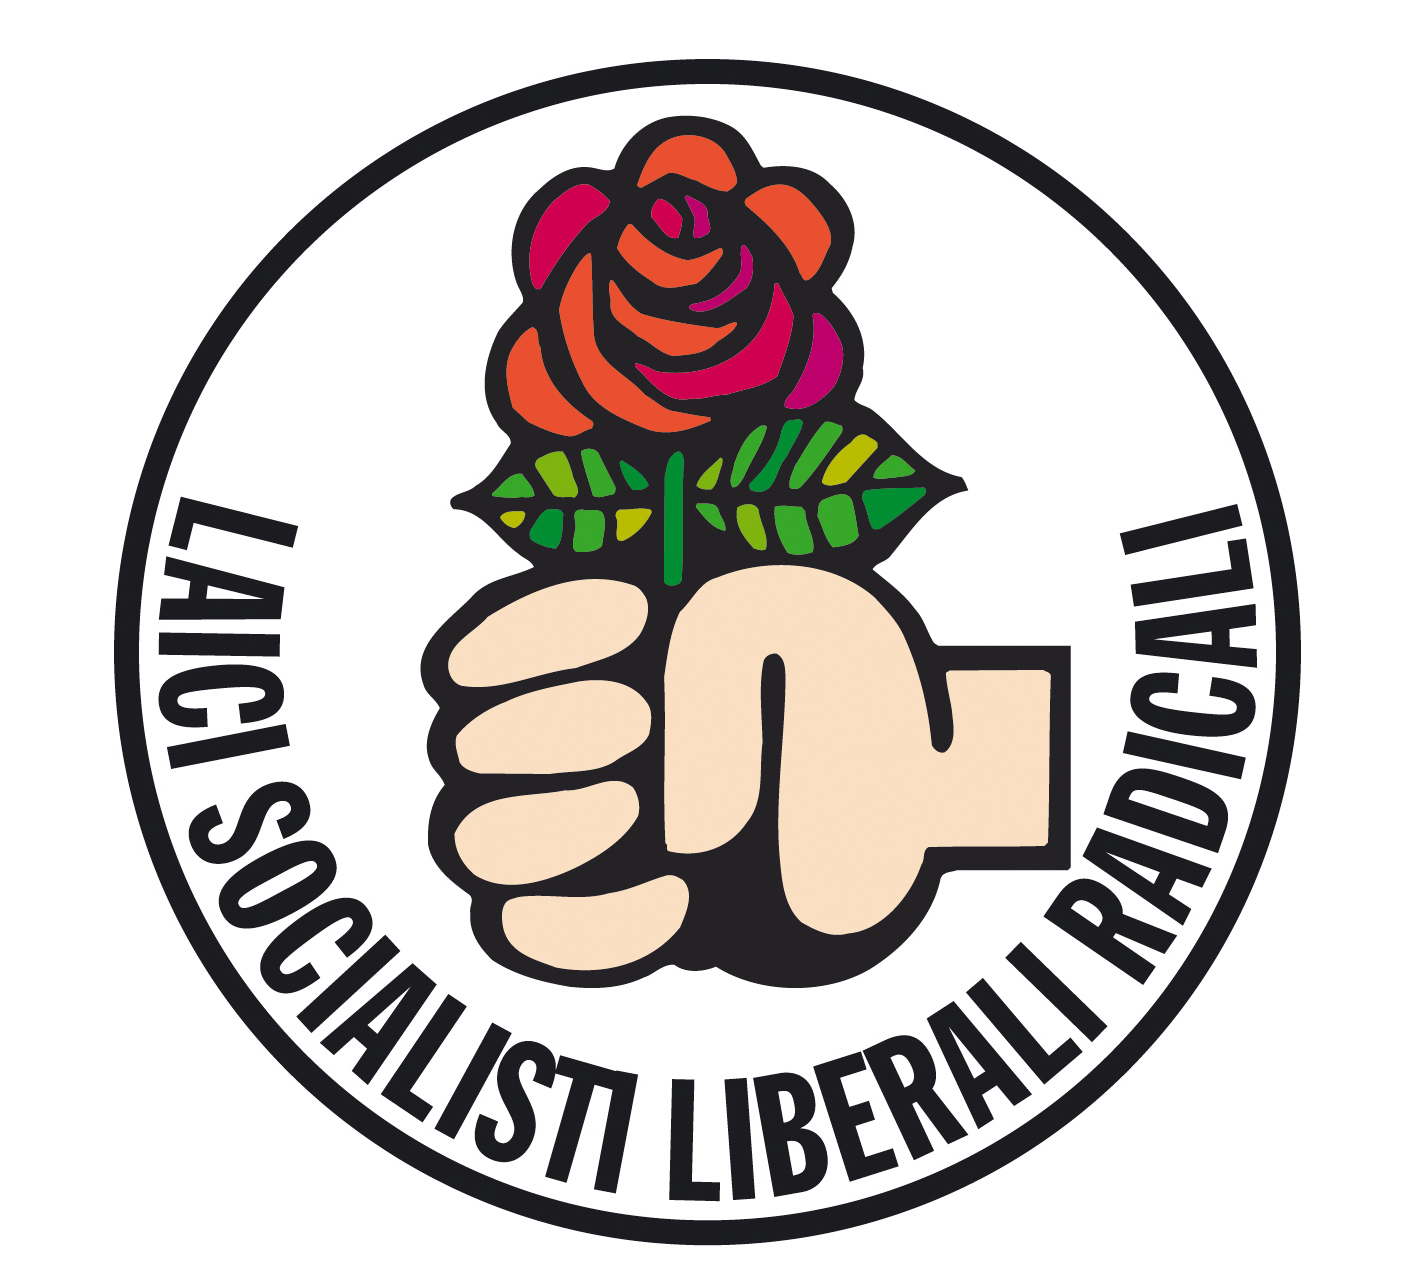 2006 - Simbolo dell'alleanza elettorale tra socialisti e radicali